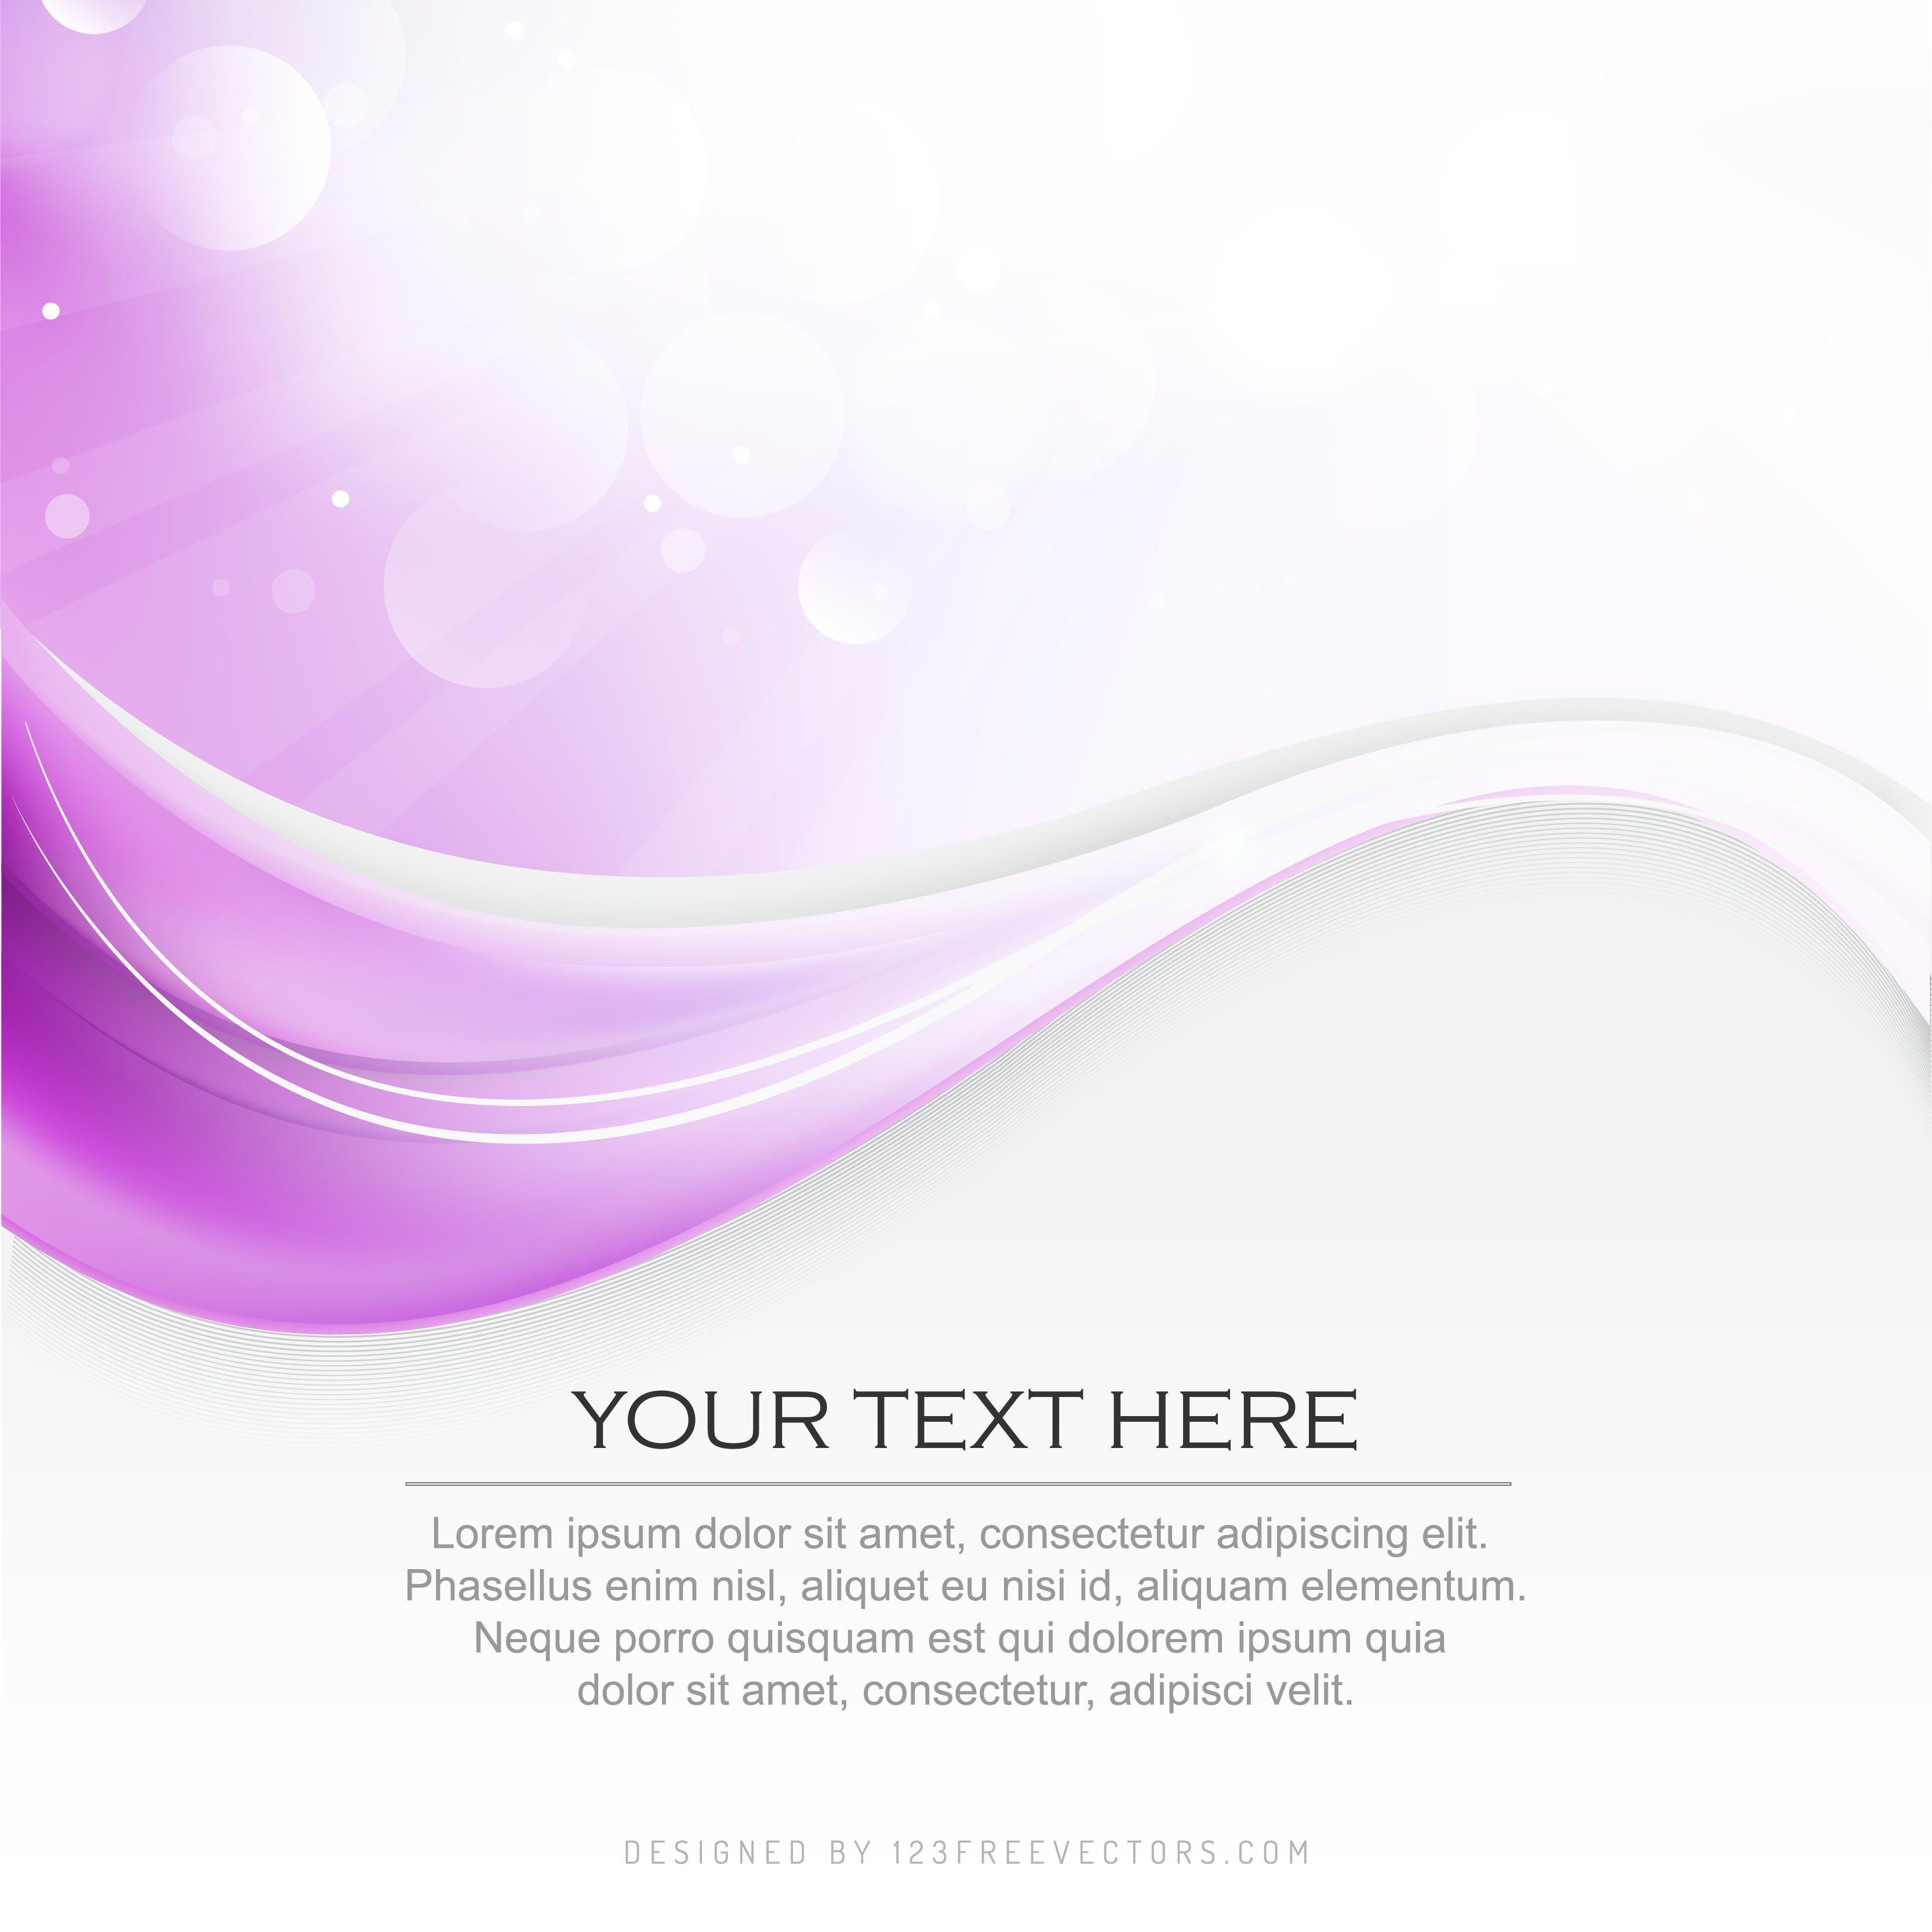 Light Purple Background Vectors. Download Free Vector Art